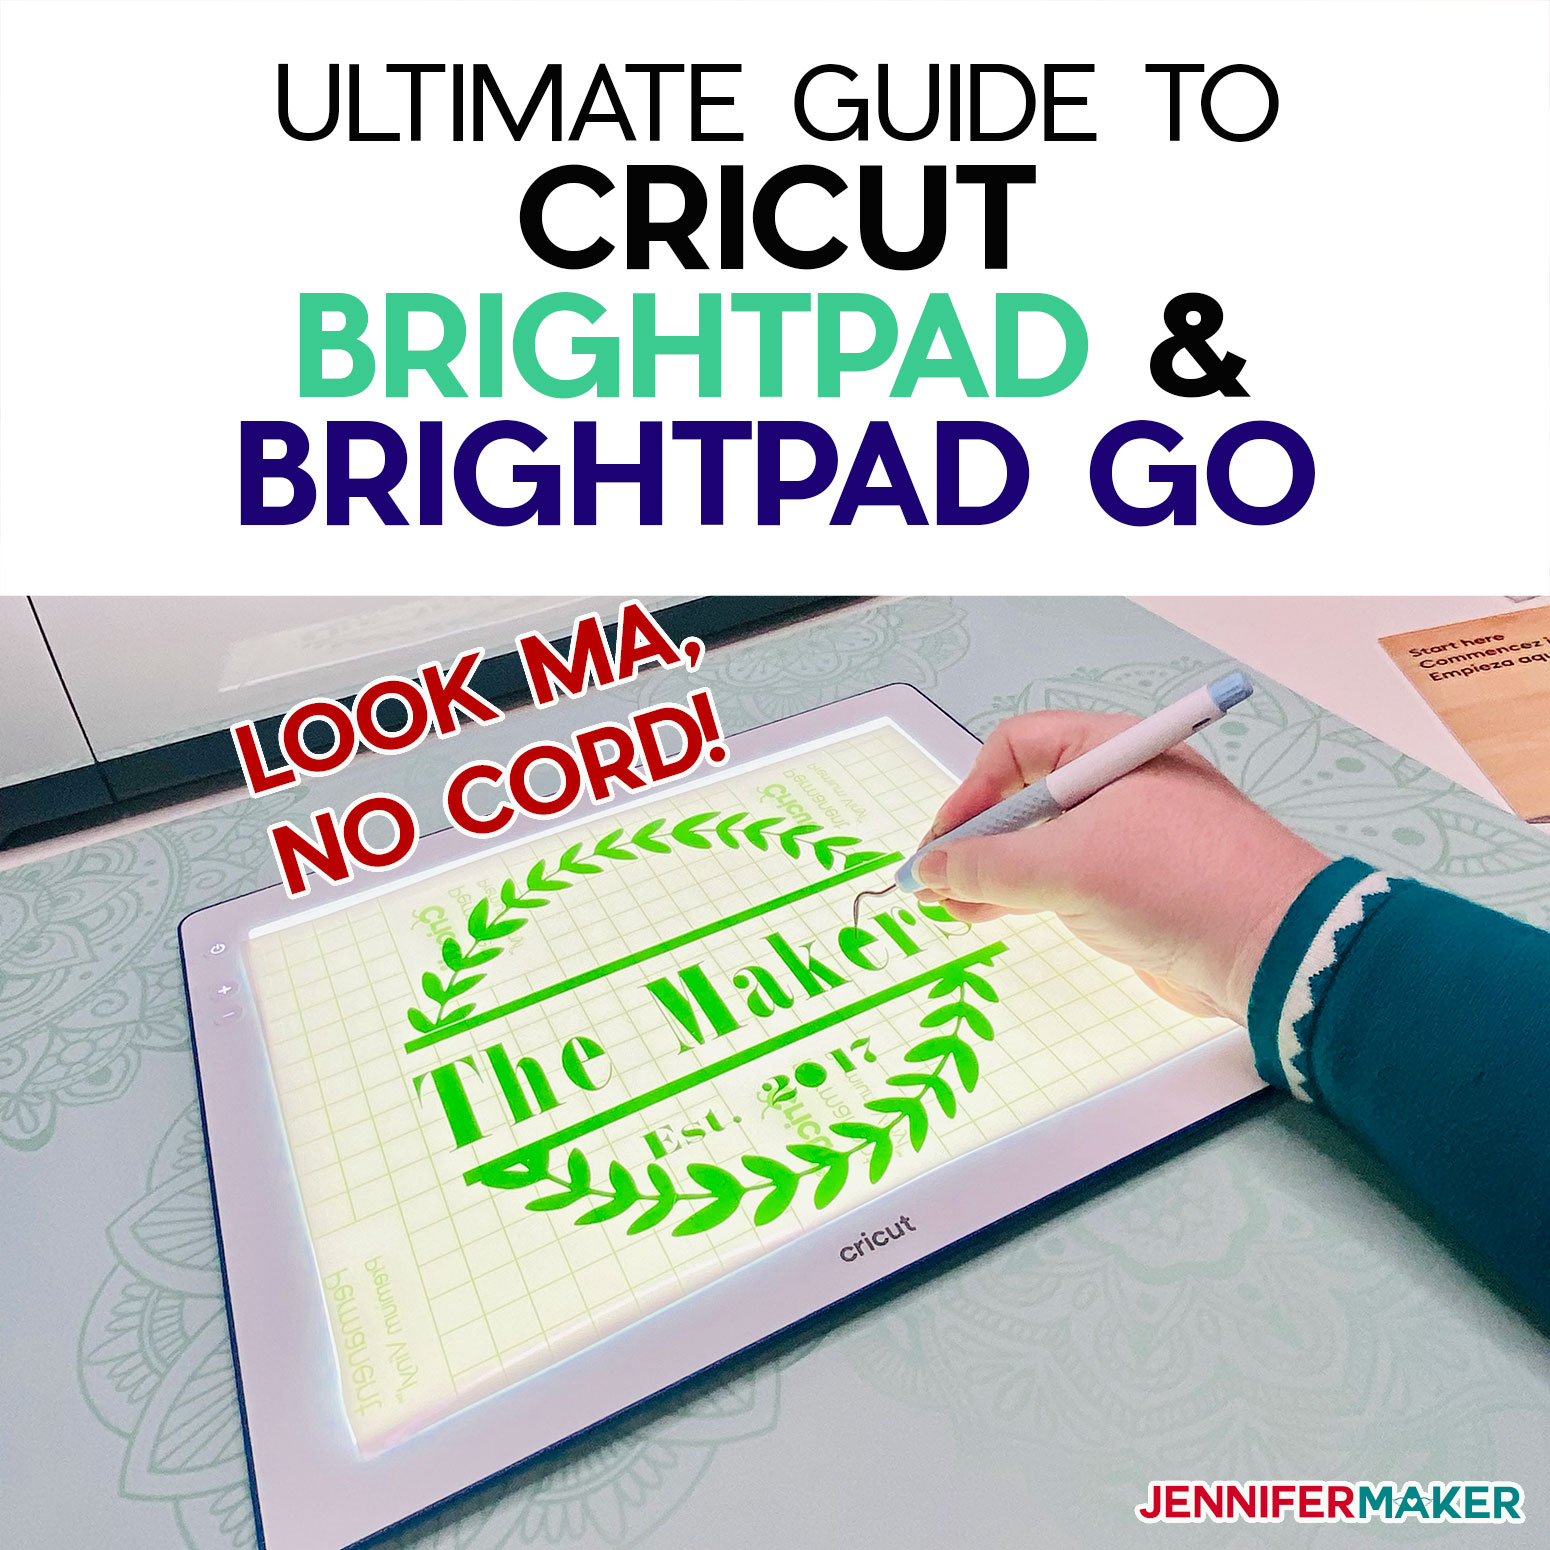 Cricut BrightPad & BrightPad Go: Ultimate Guide to Cricut’s Light Boxes